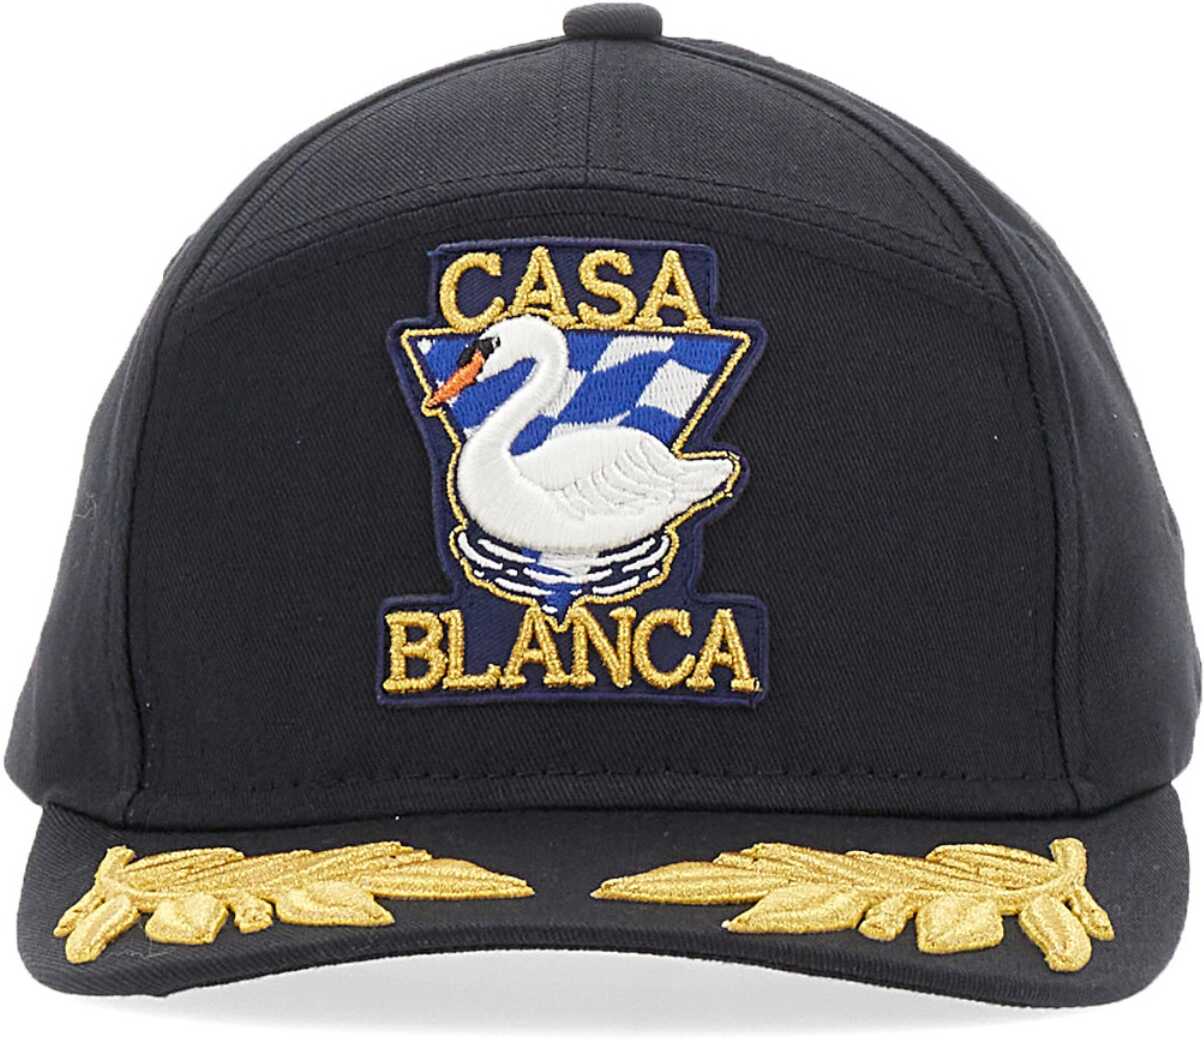 Casablanca Par Avion Baseball Cap BLACK